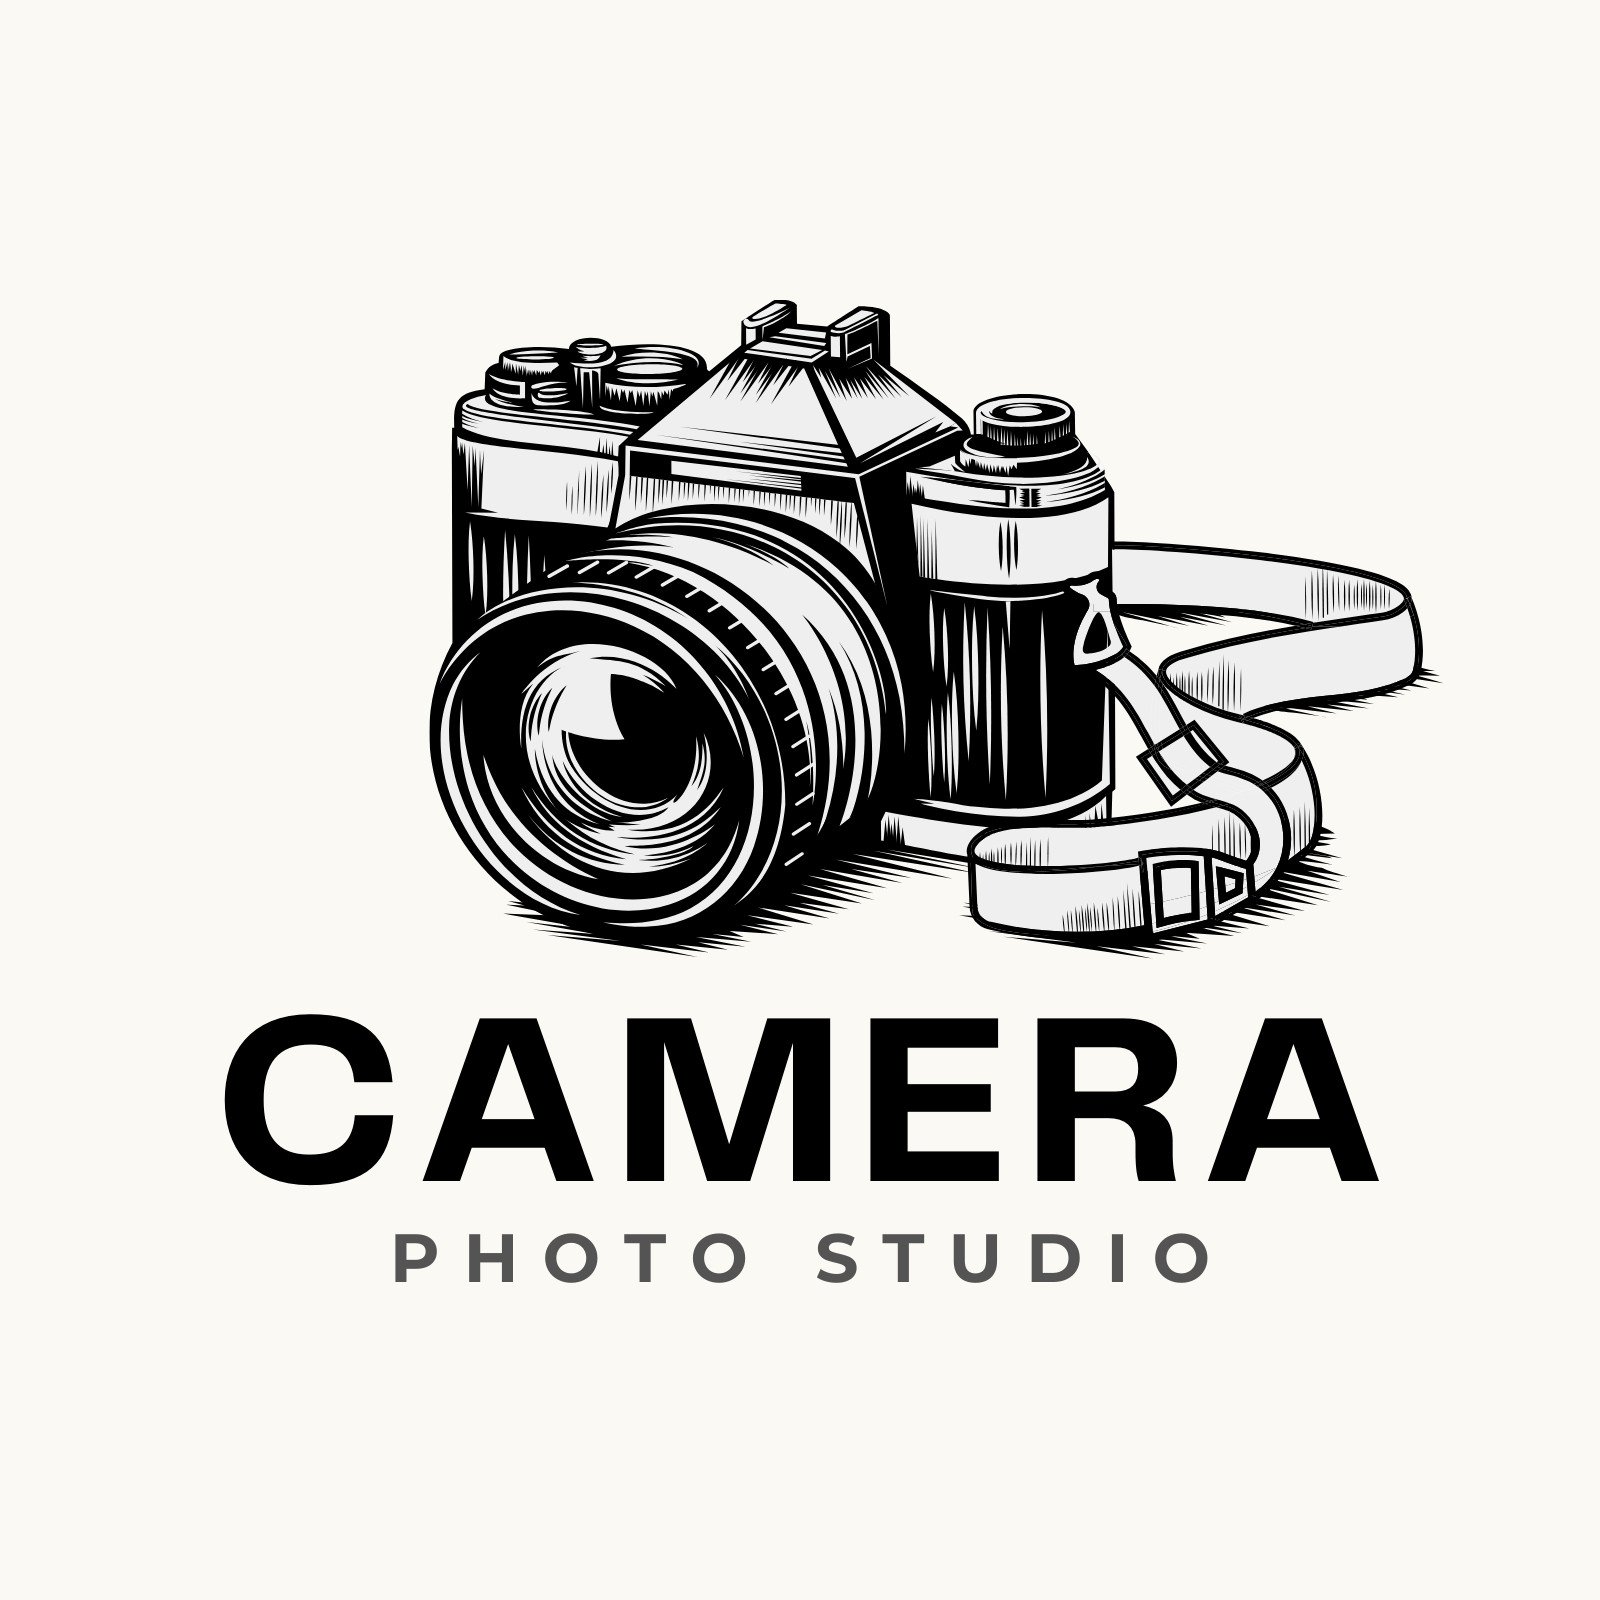 Premium Vector | Photo studio logo design. | Logo design, Studio logo,  Camera logos design